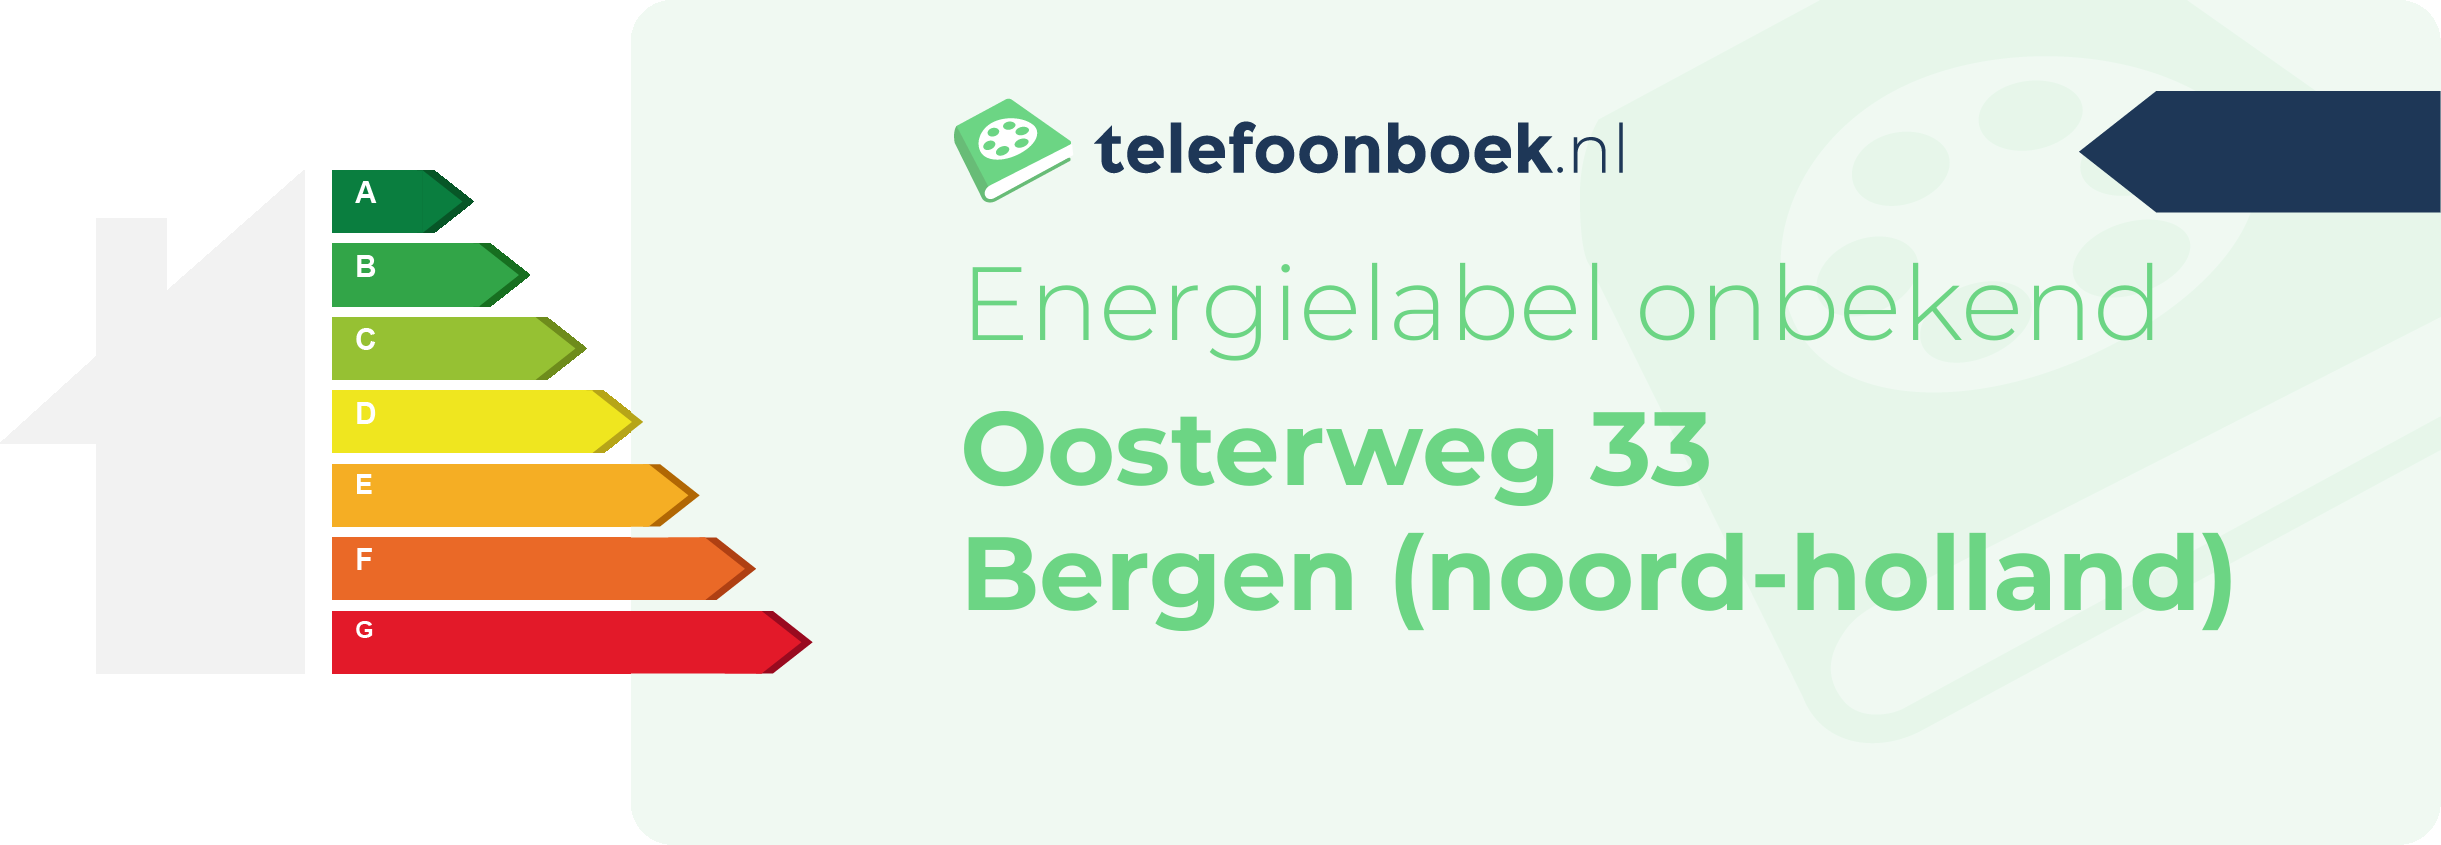 Energielabel Oosterweg 33 Bergen (Noord-Holland)